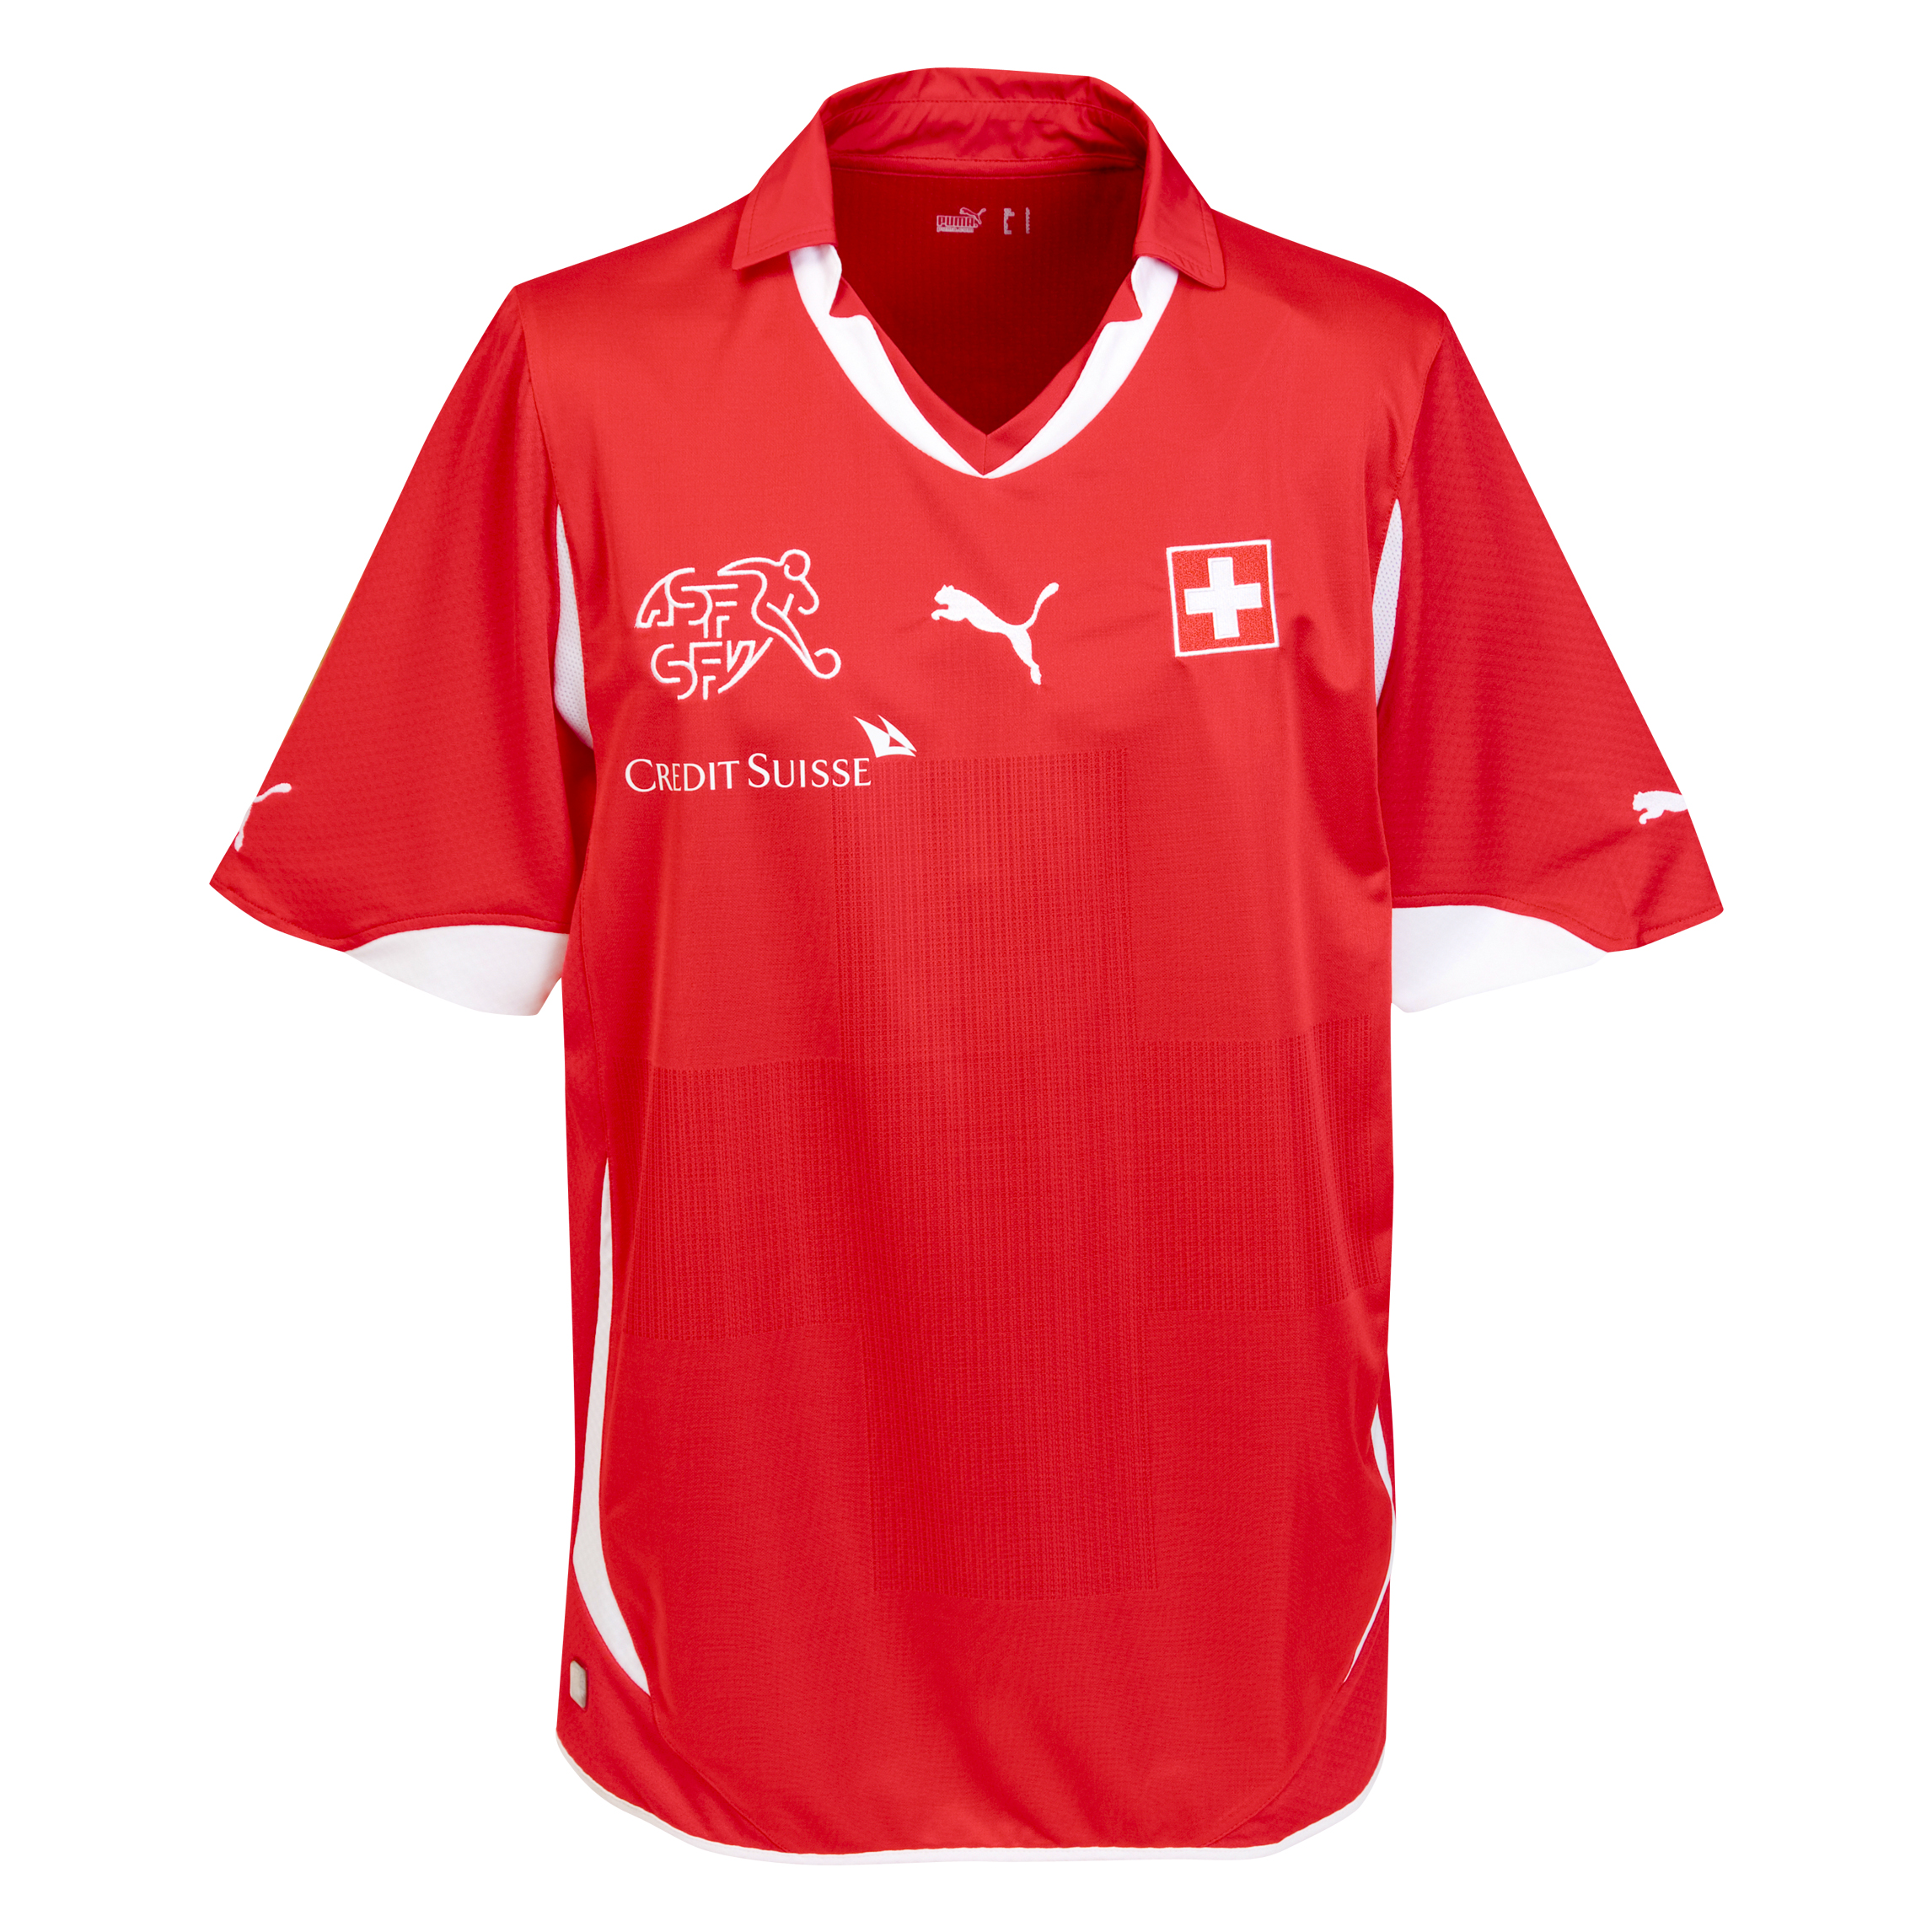 ملابس المنتخبات لكأس العالم ‎(2010)‎ Kb-65923